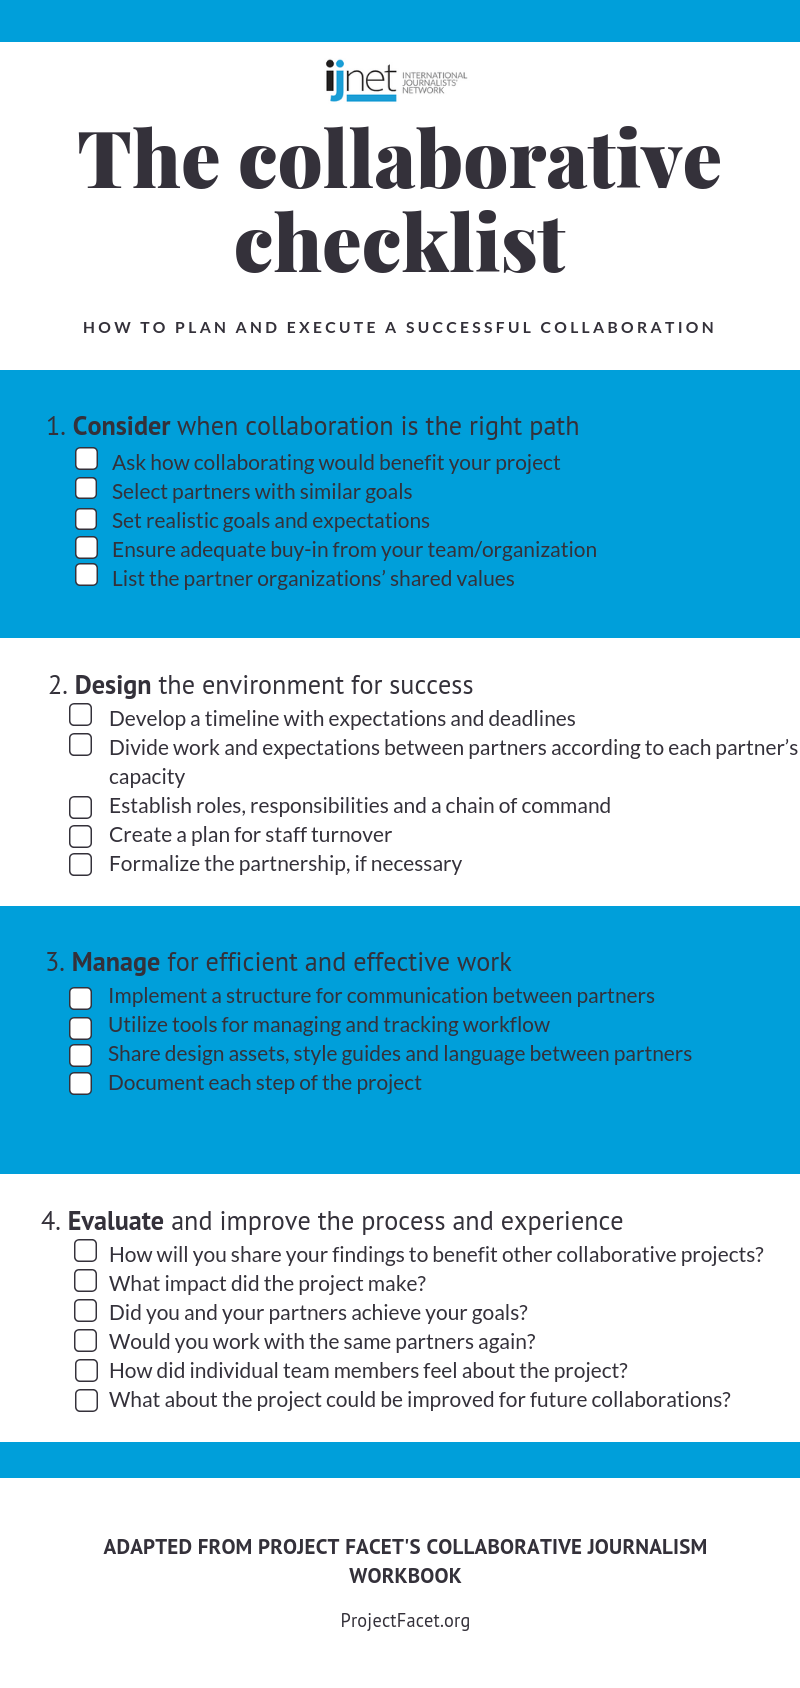 The collaborative checklist